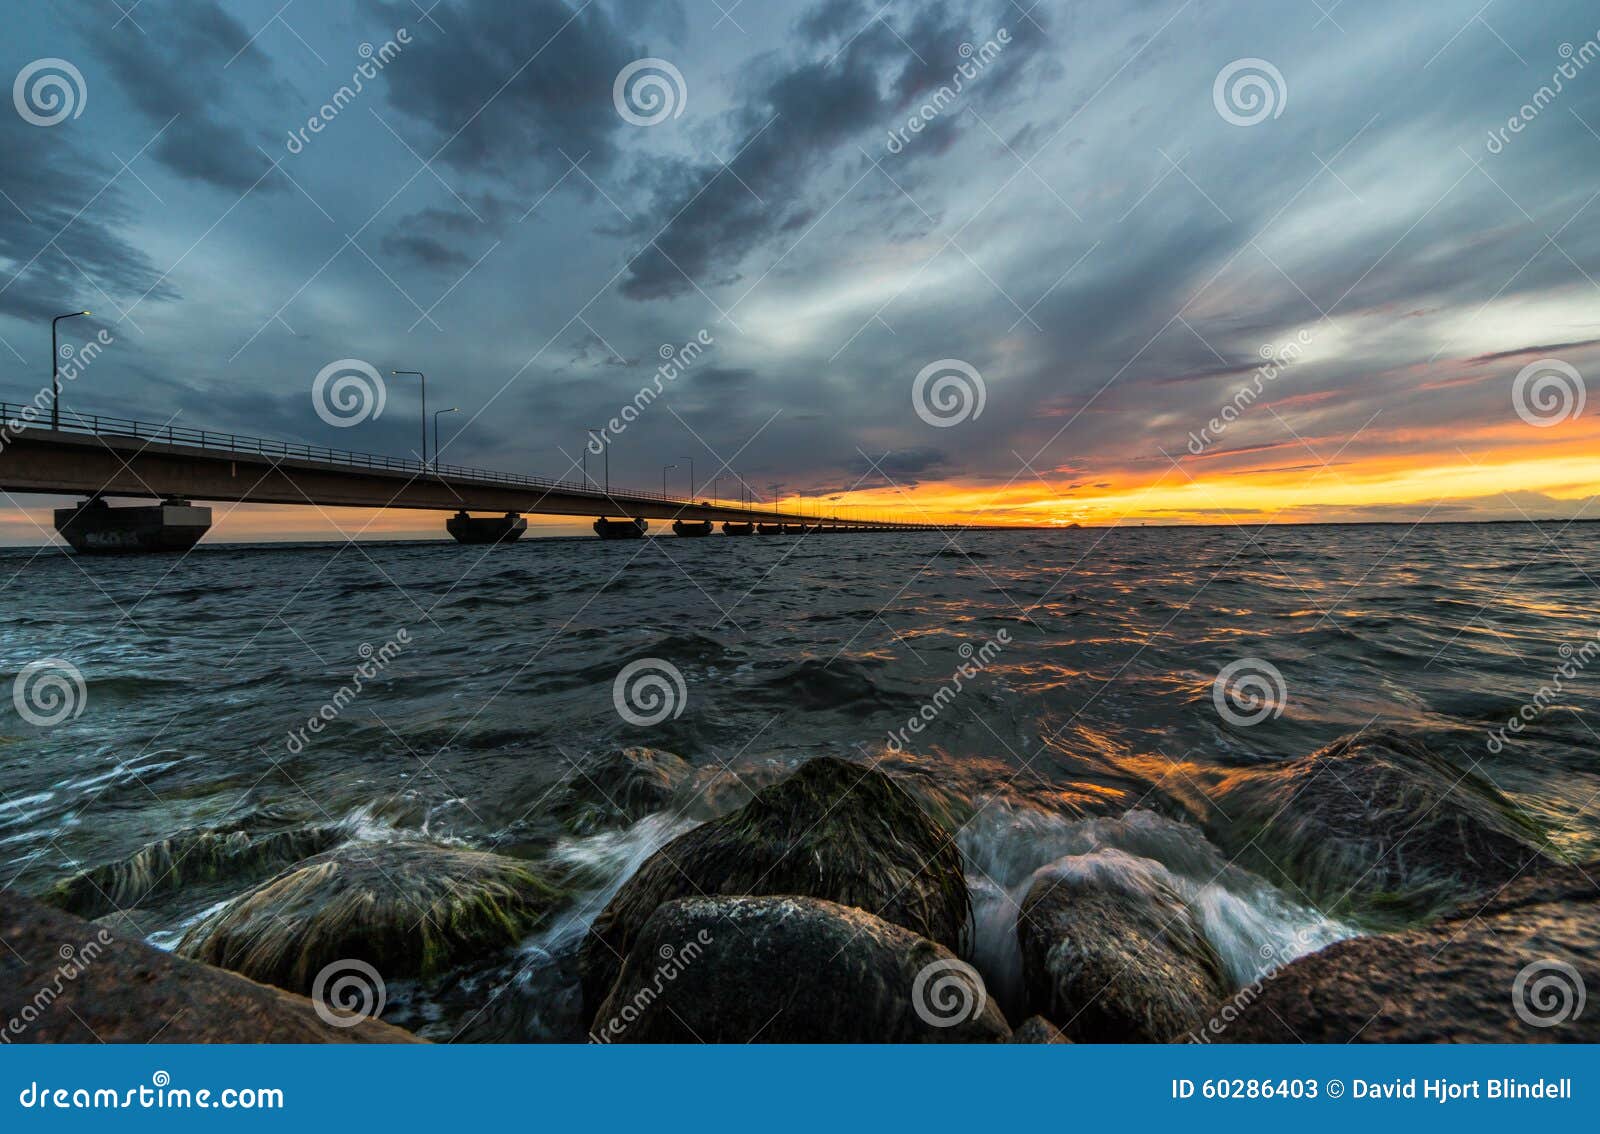 oland bridge sunset